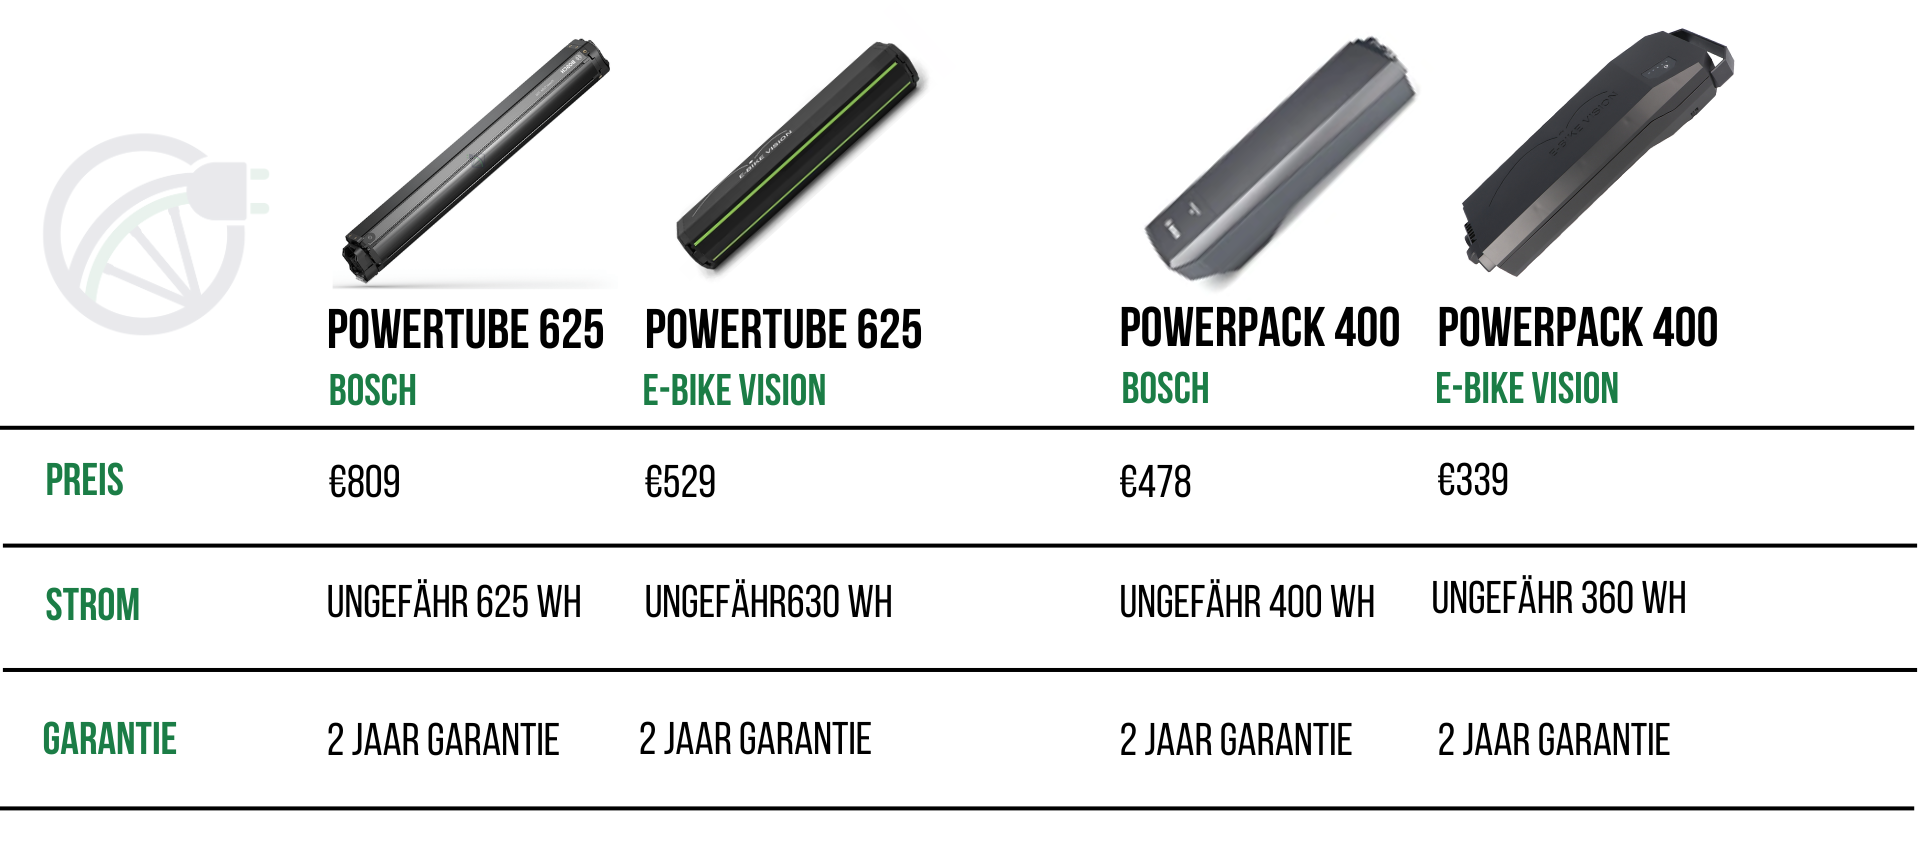 vergleichstabelle zwischen bosch powertube 625, e-bike vision powertube 625, bosch powerpack 400 und e-bike vision powerpack 400 in den punkten: preis, leistung und garantie.